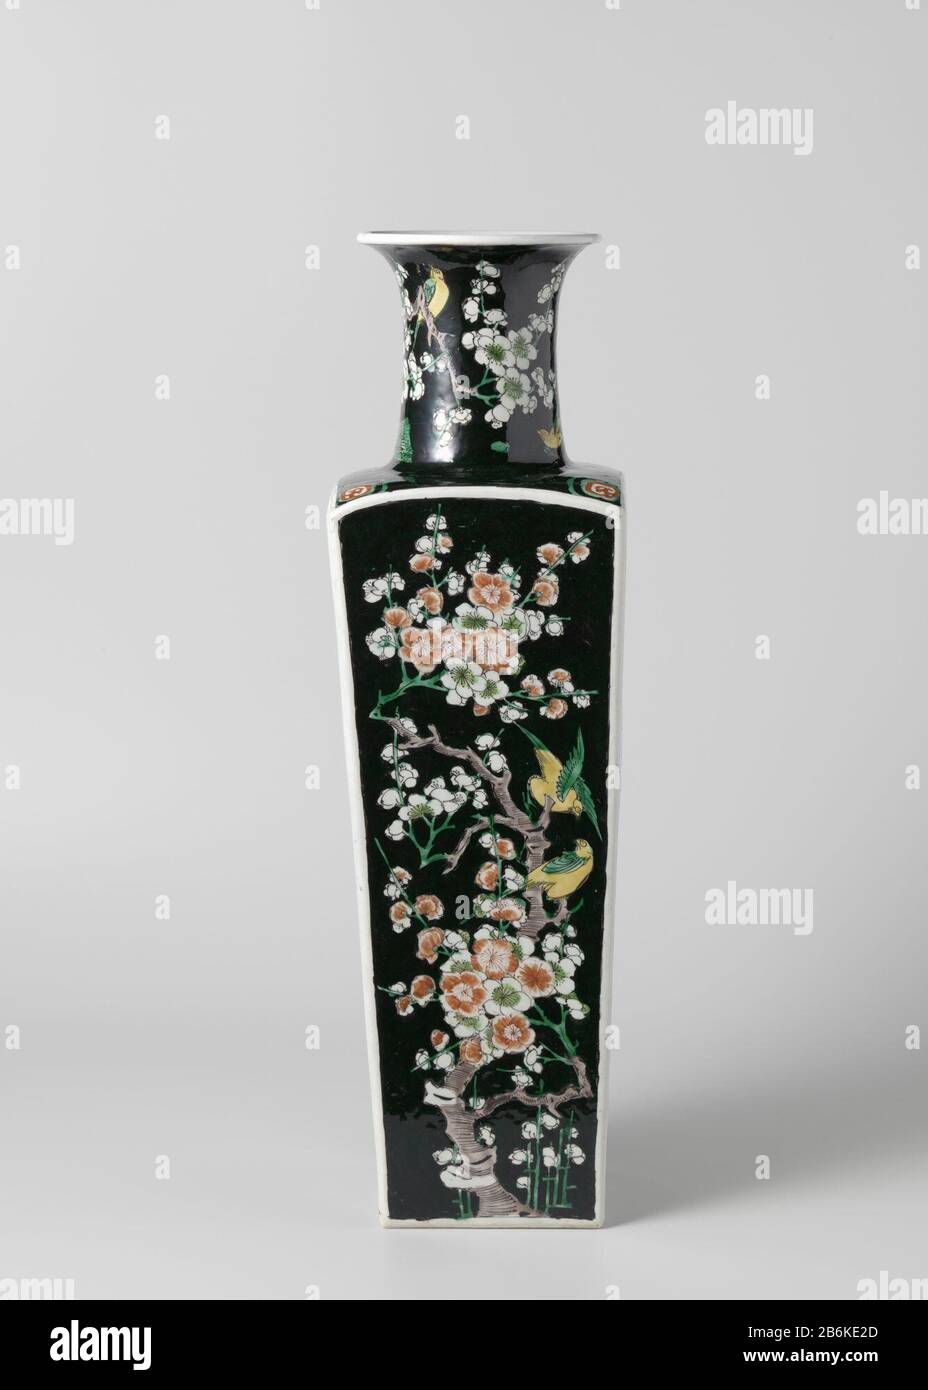 Panda Vlekkeloos magnetron Drucker Vase Round vase (Drucker Vase) with birds floral branches Vierkante  vaas van porselein met een wijde, spreidende nek, bedekt met een zwart  glazuur en beschilderd in rood, groen, geel, aubergine en